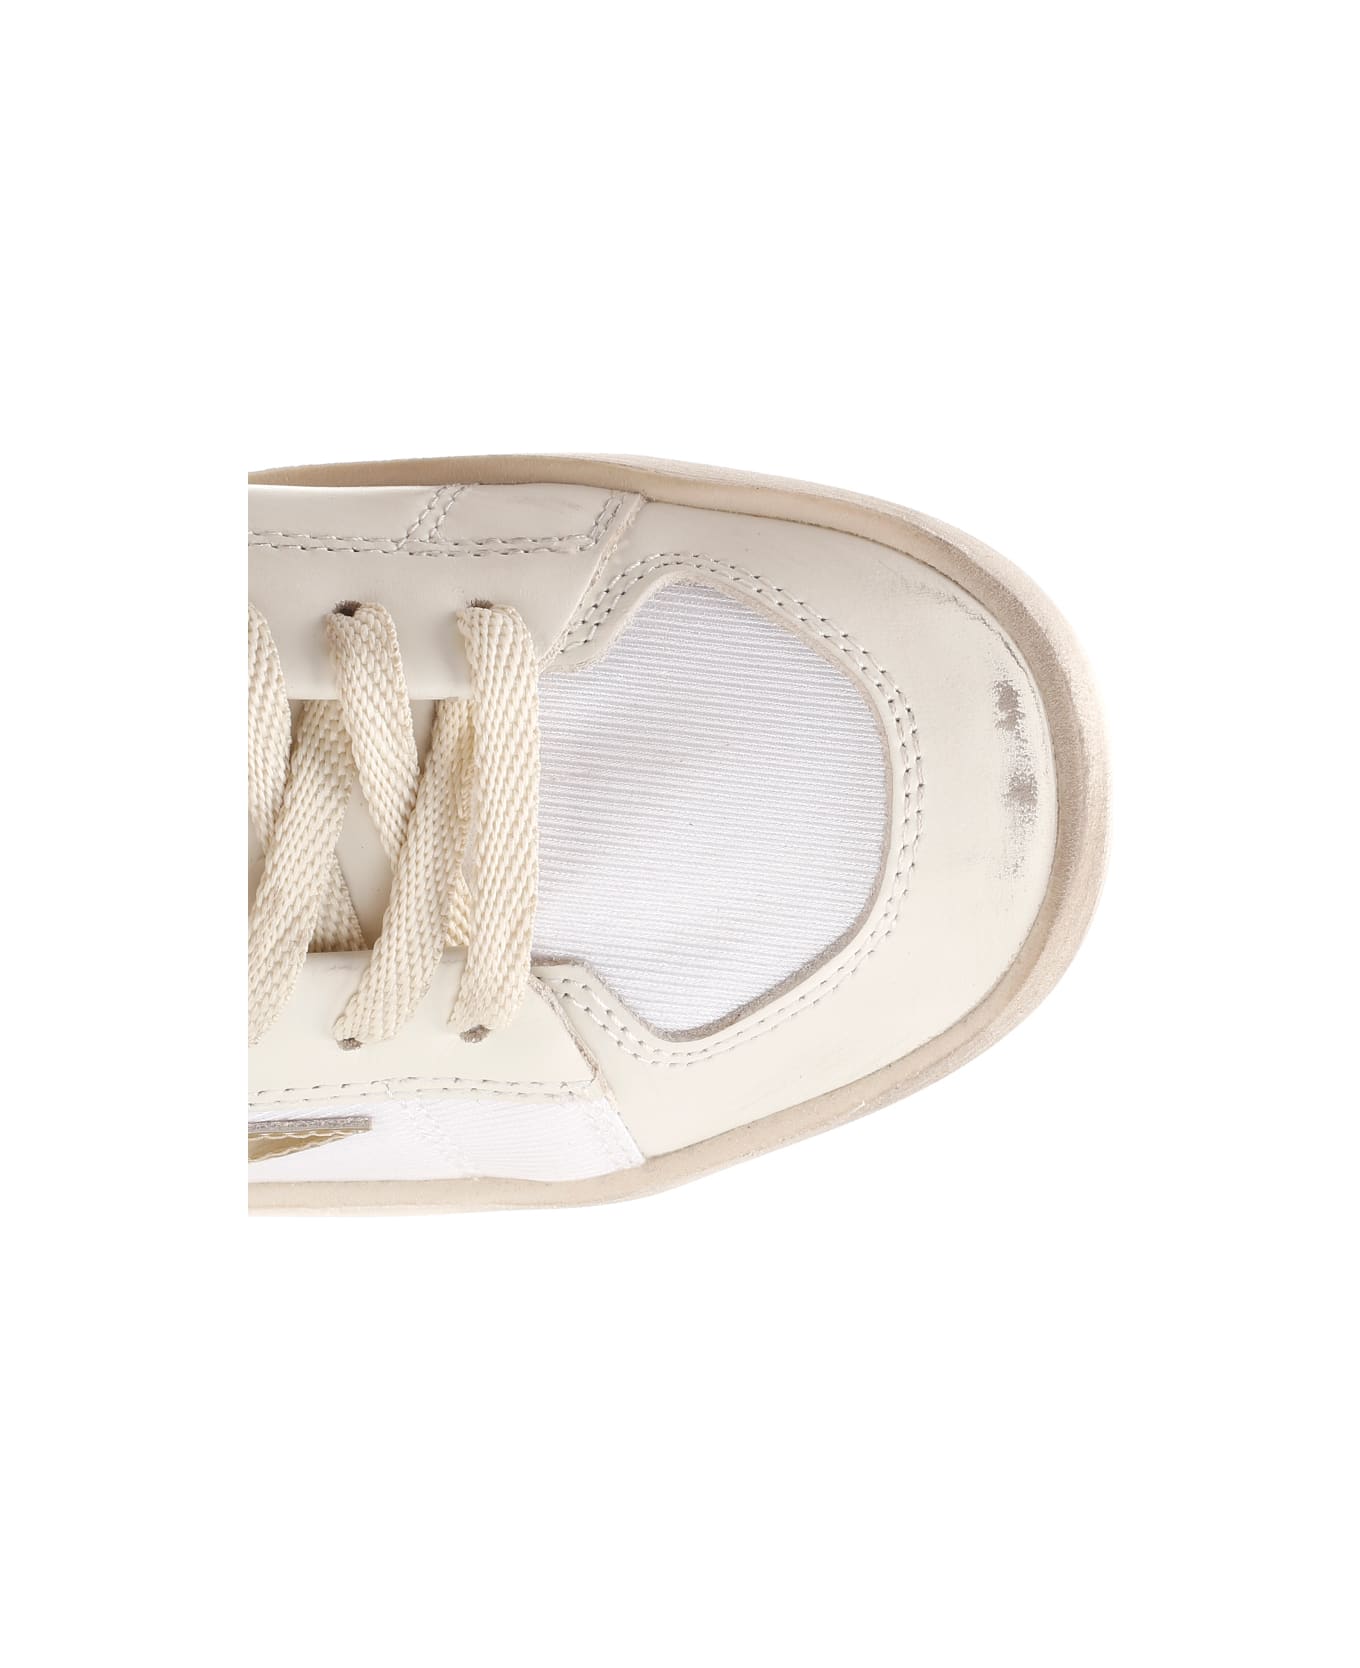 Golden Goose Stardan Sneakers - White/Gold スニーカー